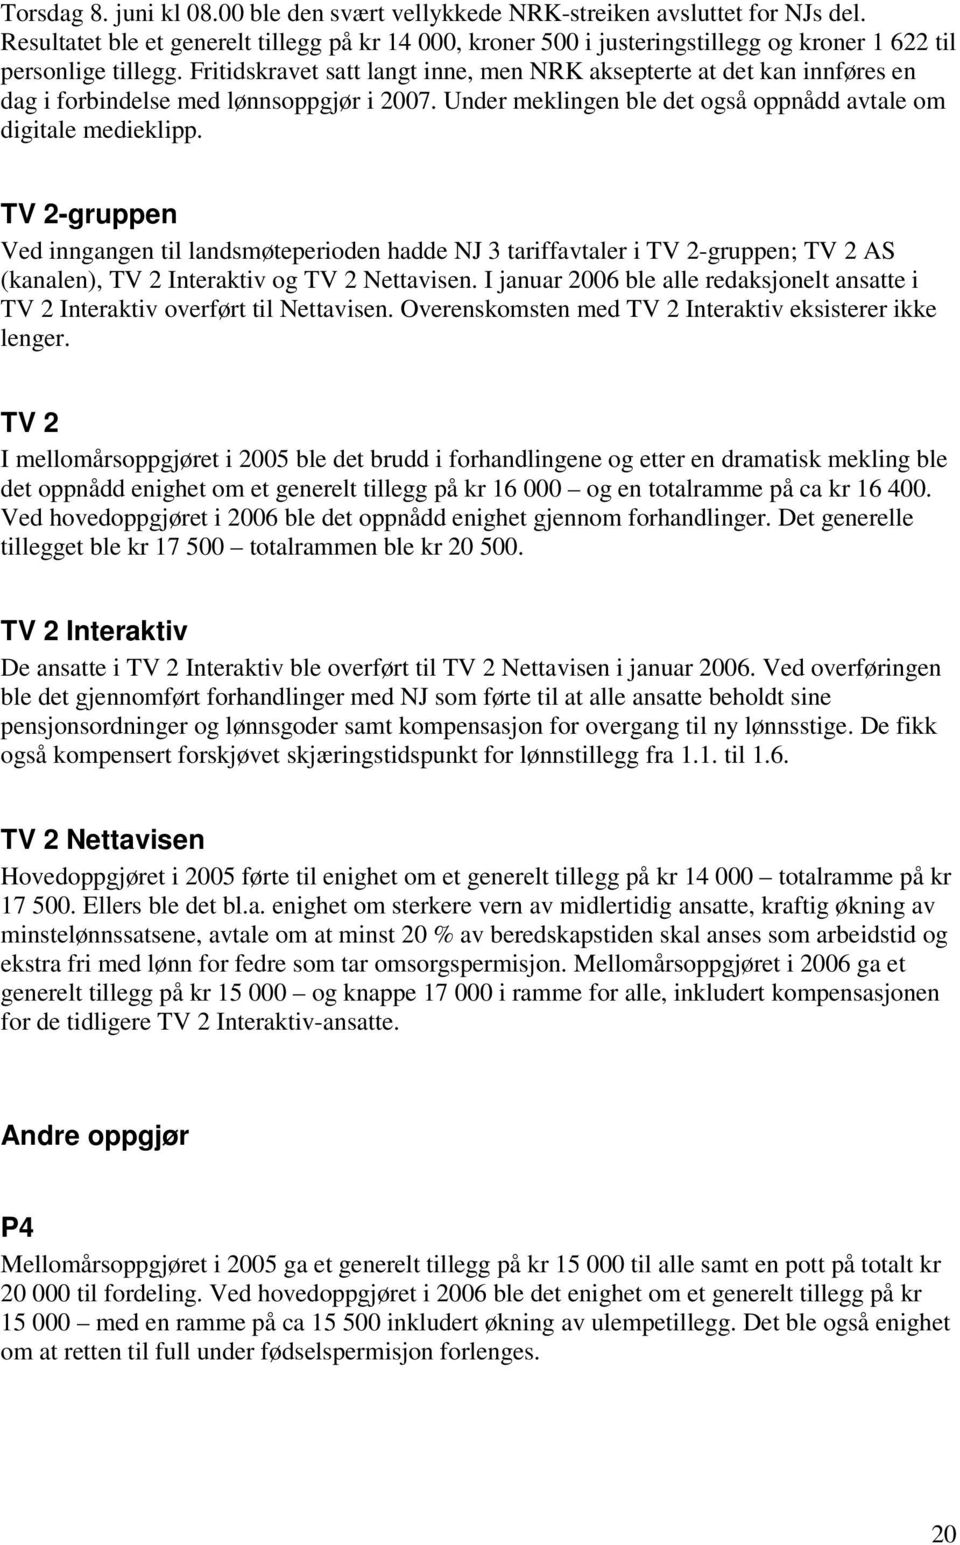 Fritidskravet satt langt inne, men NRK aksepterte at det kan innføres en dag i forbindelse med lønnsoppgjør i 2007. Under meklingen ble det også oppnådd avtale om digitale medieklipp.